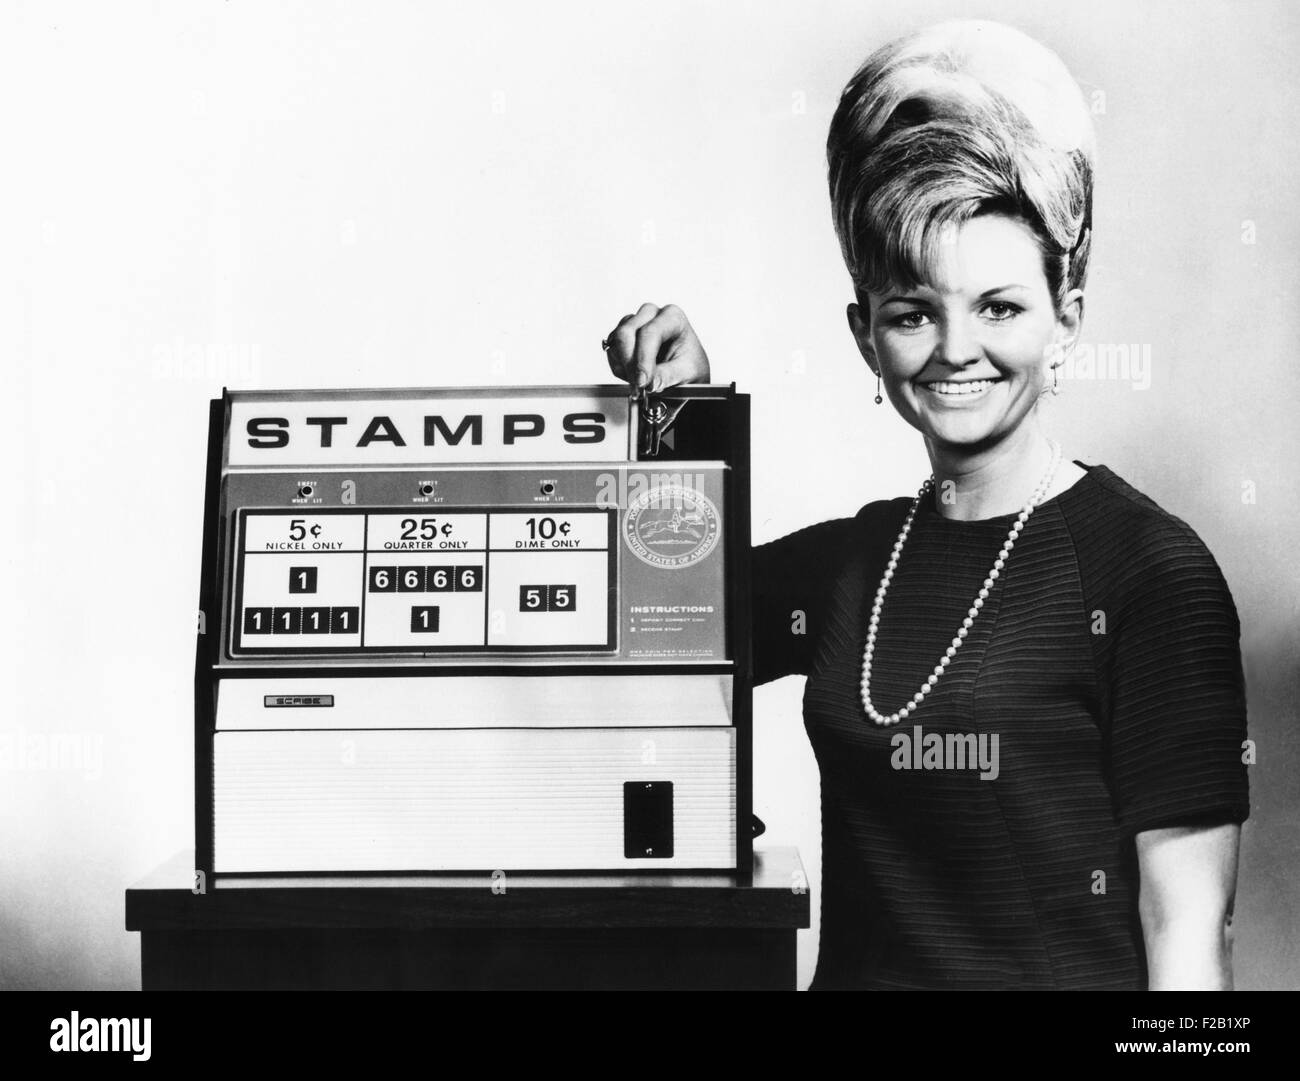 Nuovo Post Office Department timbro distributore per essere testati in Washington D.C. Betty Johnson, inserisce un quarto nel timbro distributore automatico. Febbraio 7, 1968. (CSU 2015 7 391) Foto Stock